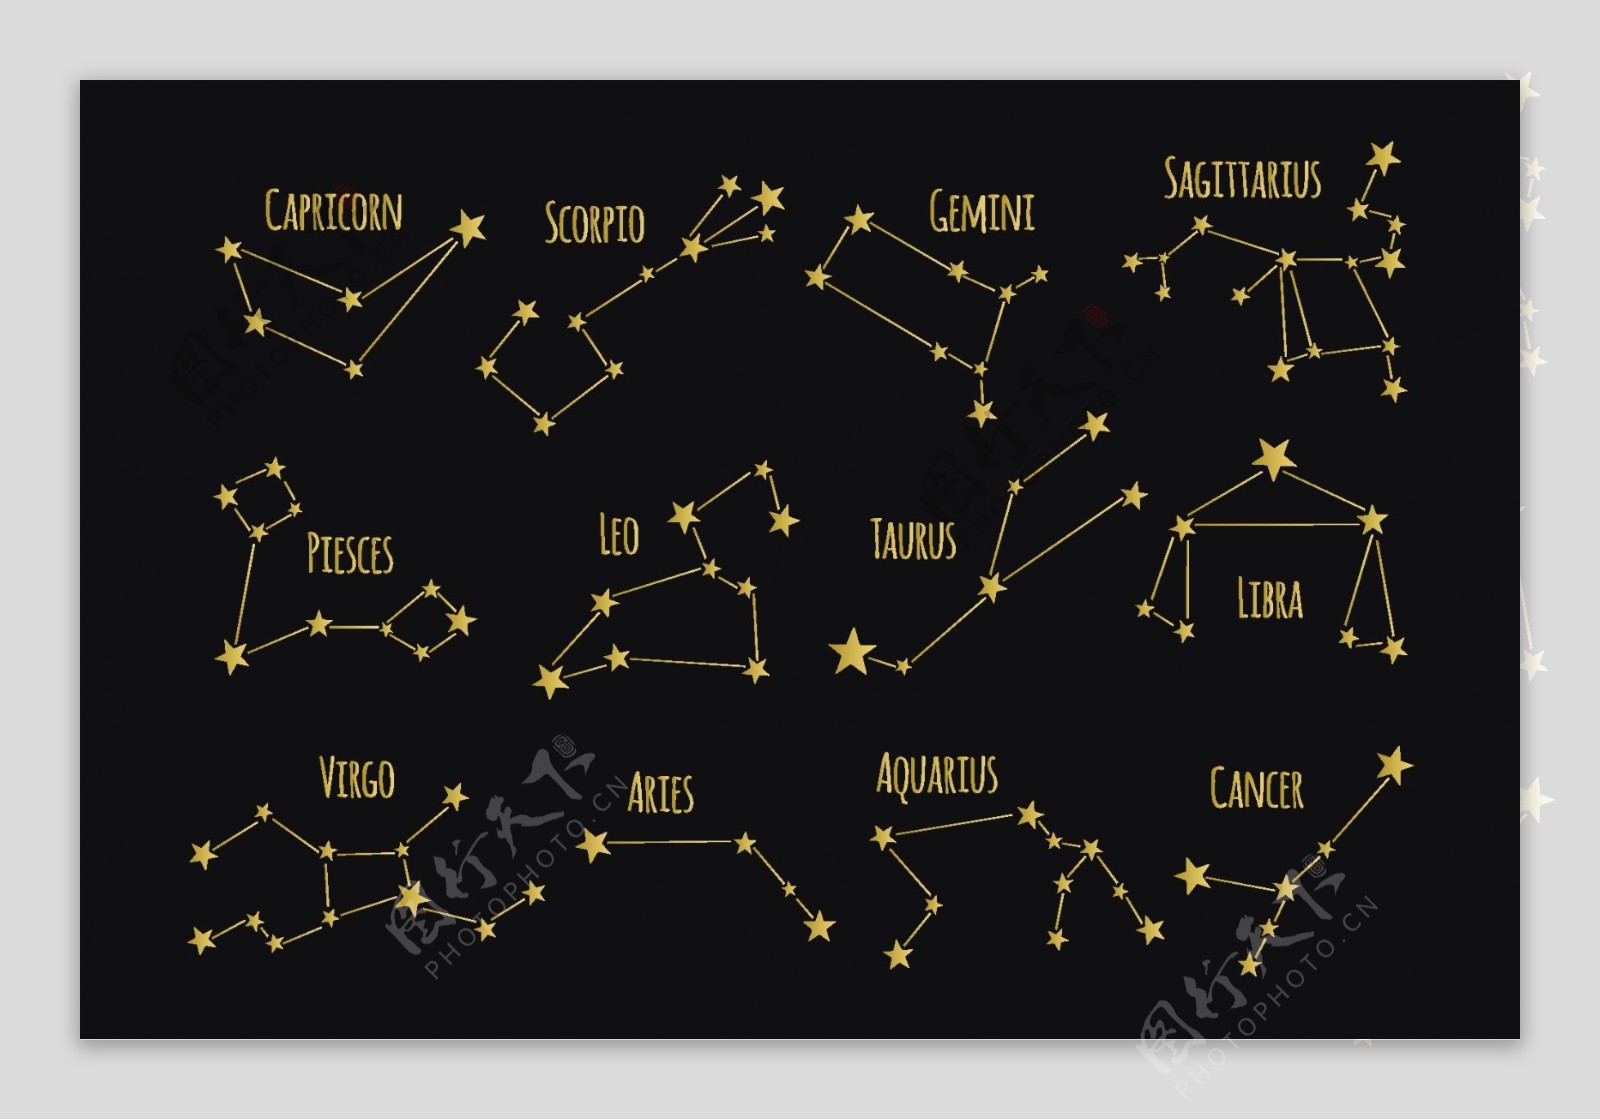 十二星座图